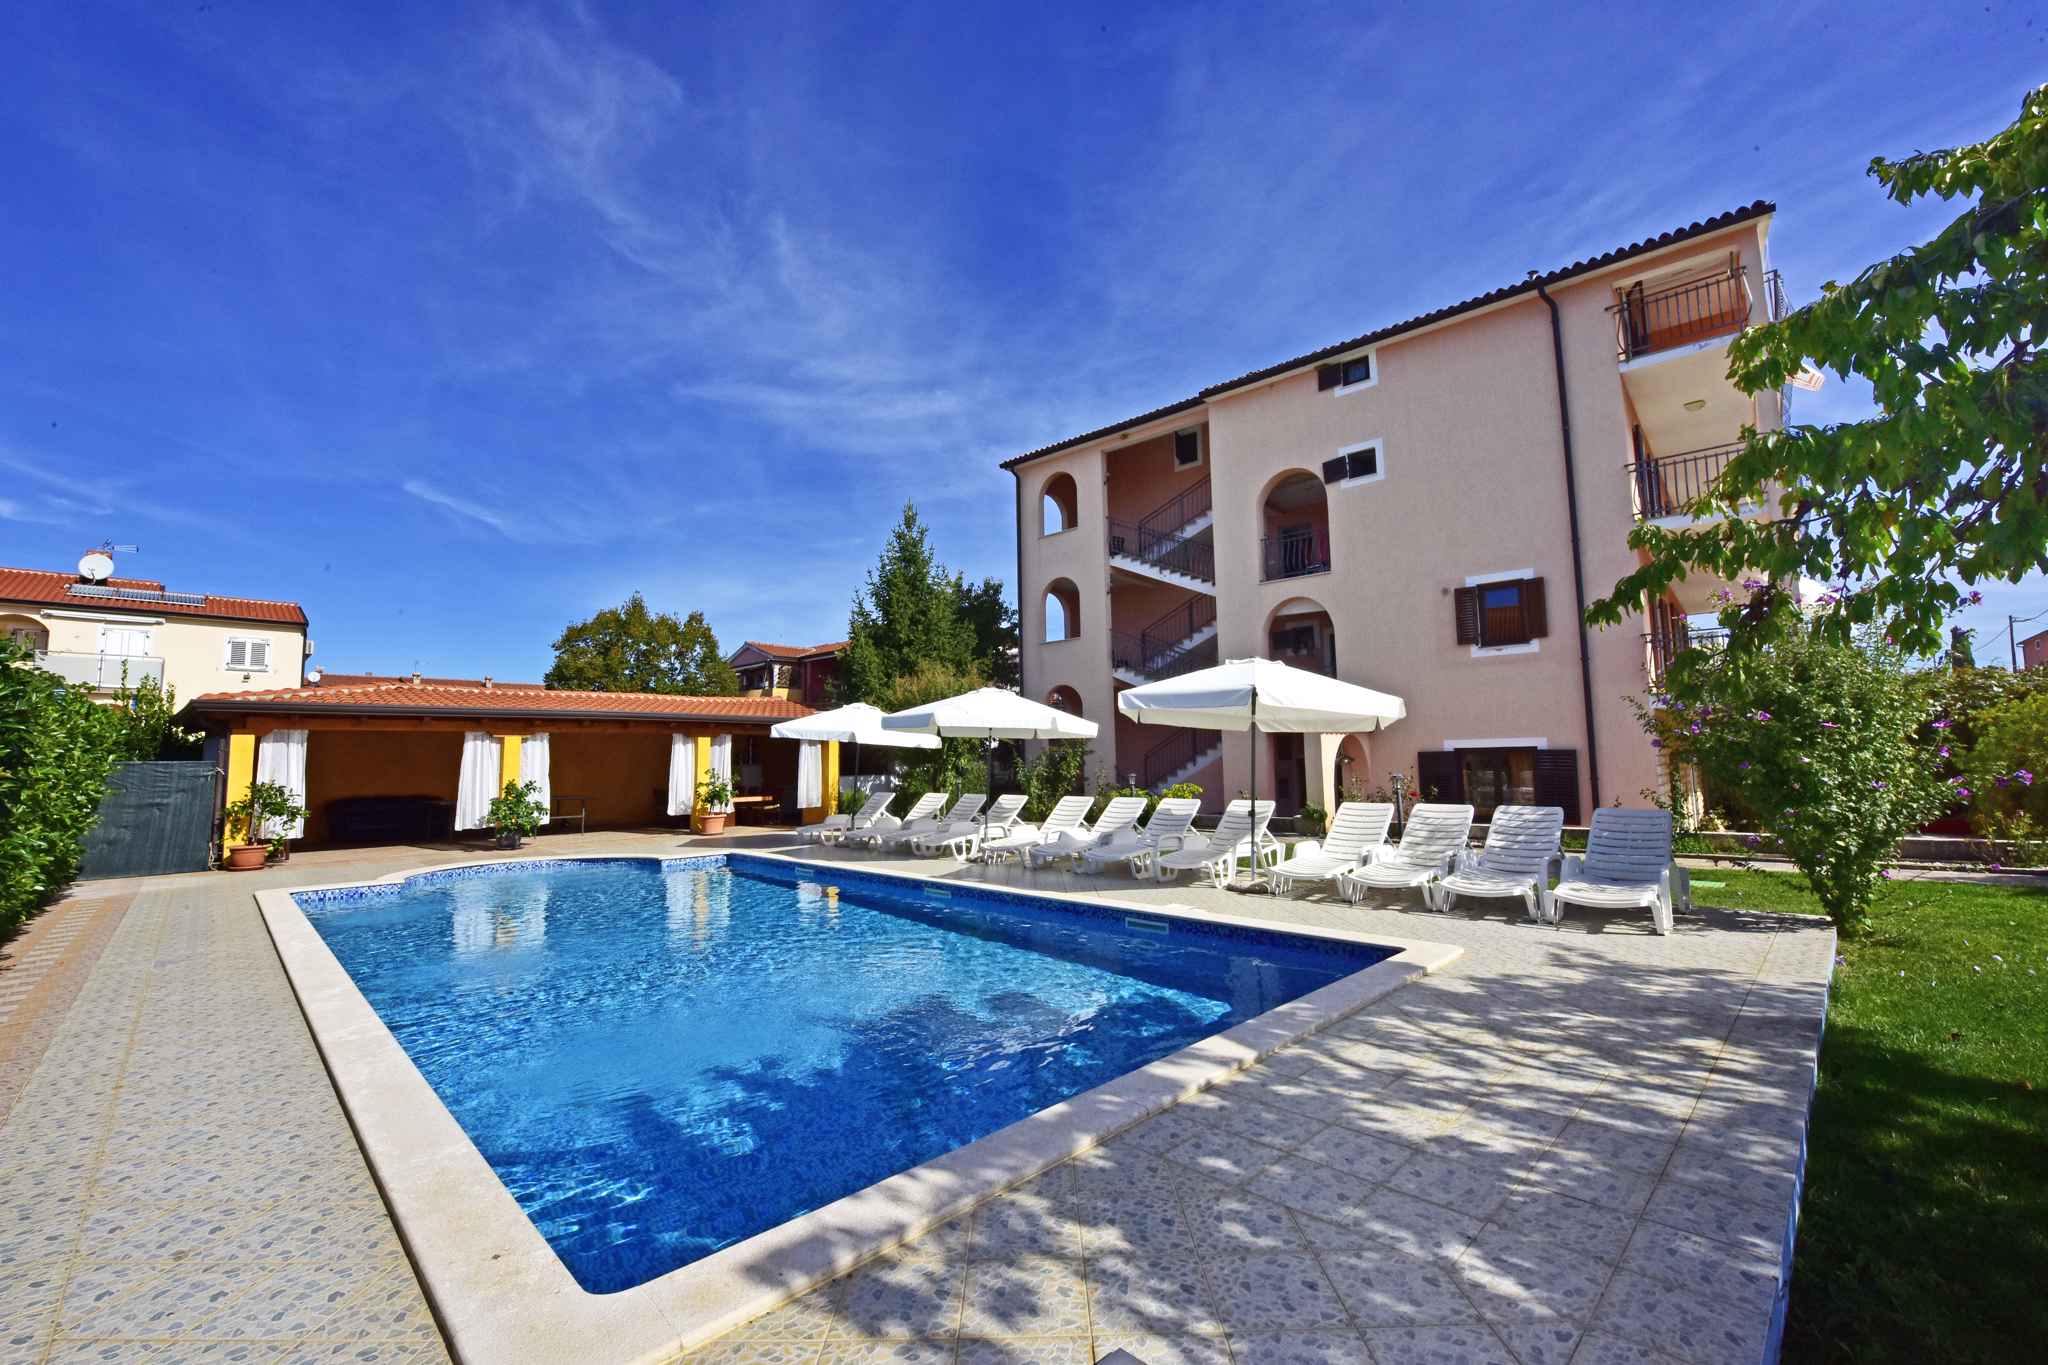 Ferienwohnung mit Balkon und Pool  in Kroatien